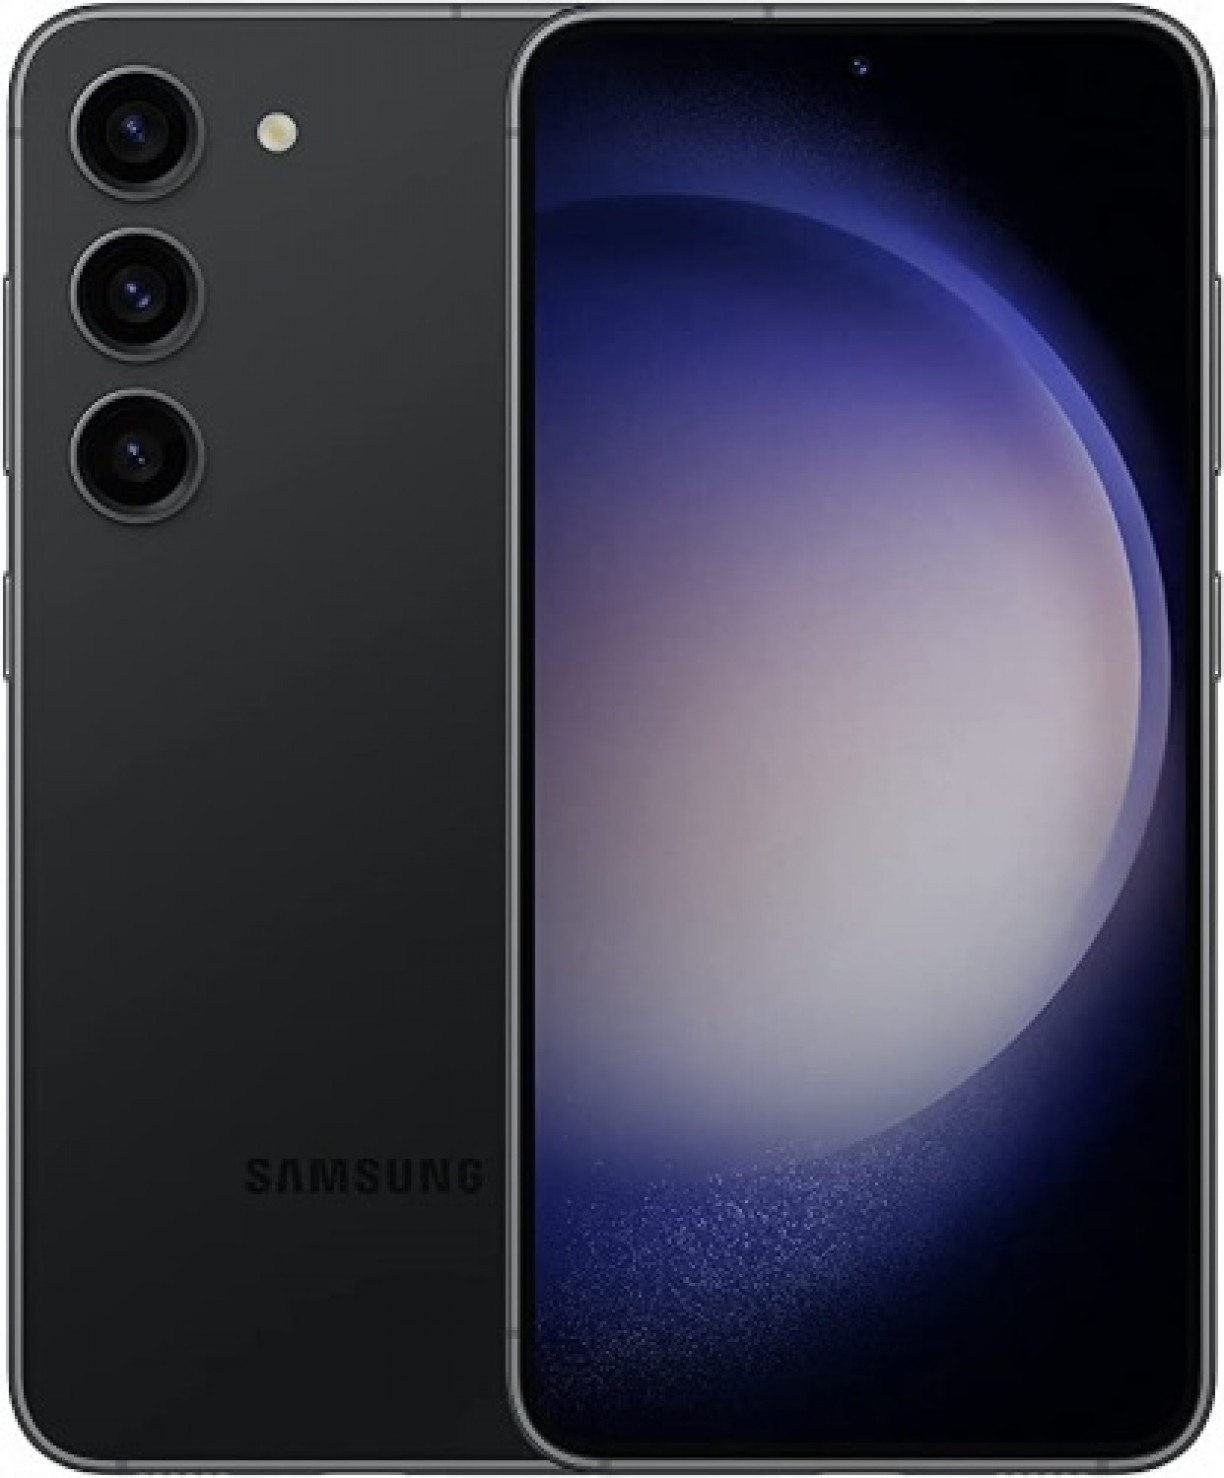 Conheça o POTENTE Samsung GALAXY S23 5G, o smartphone dos sonhos!